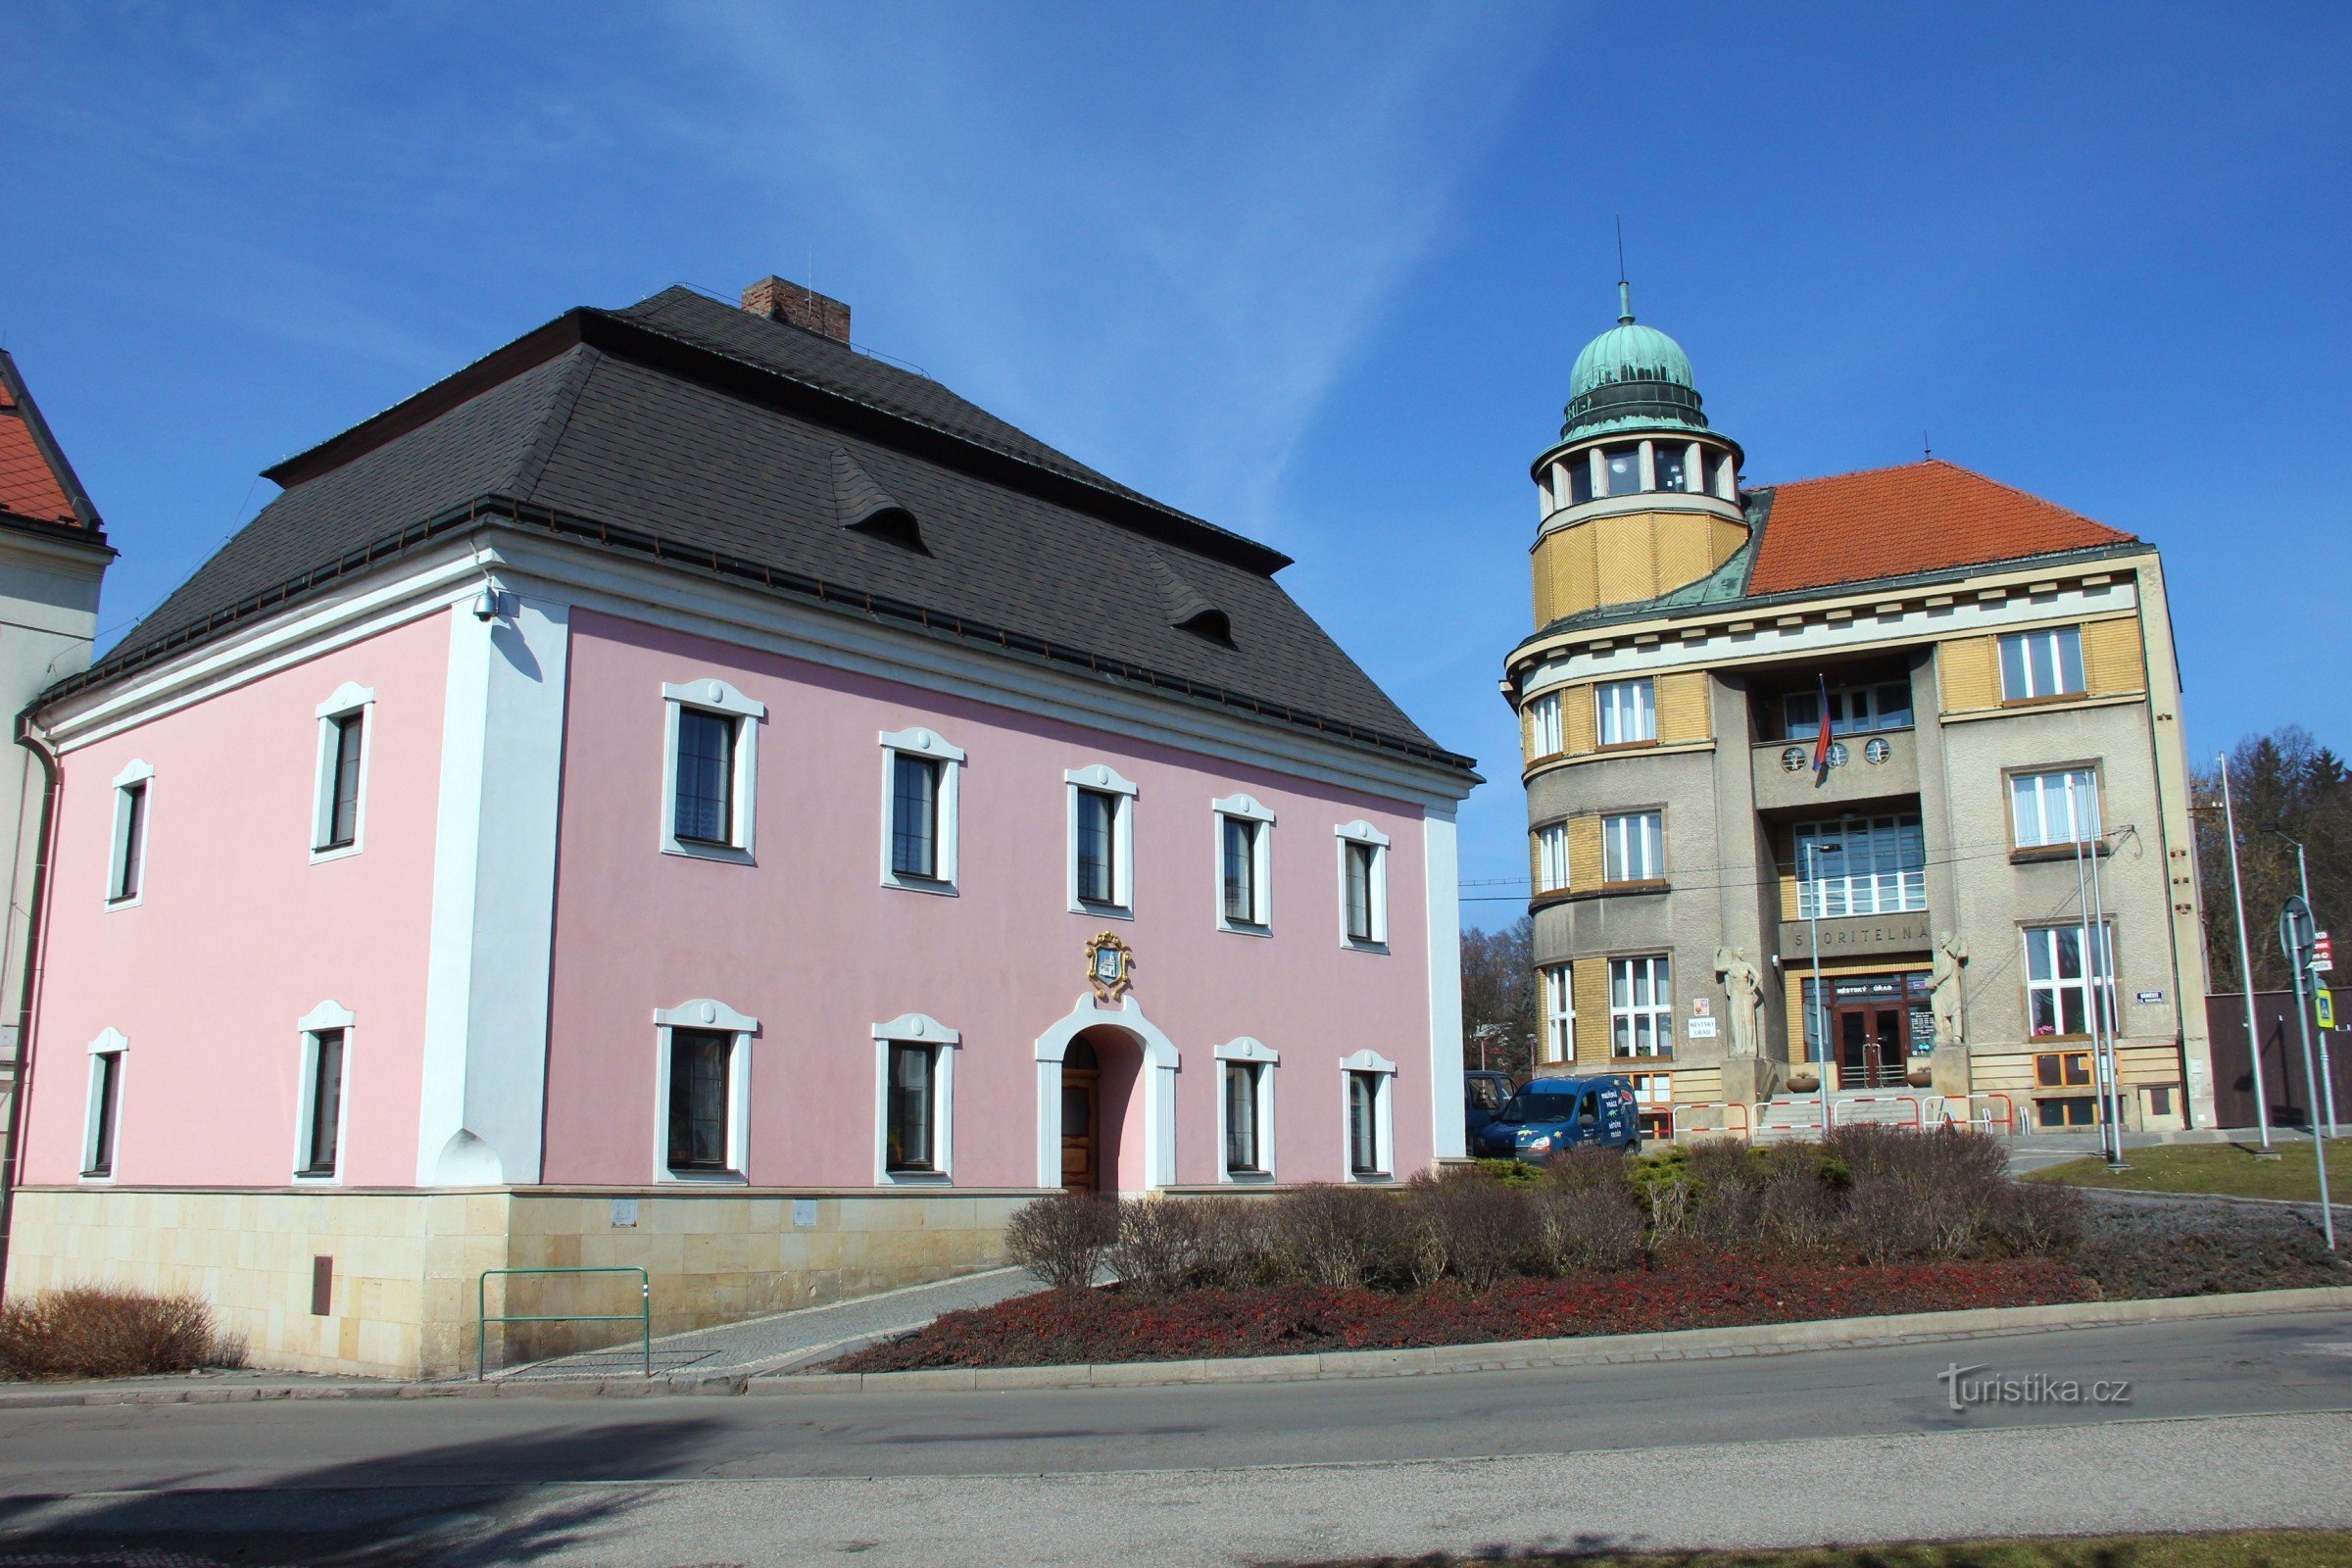 Tòa thị chính cổ ở Červený Kostelec